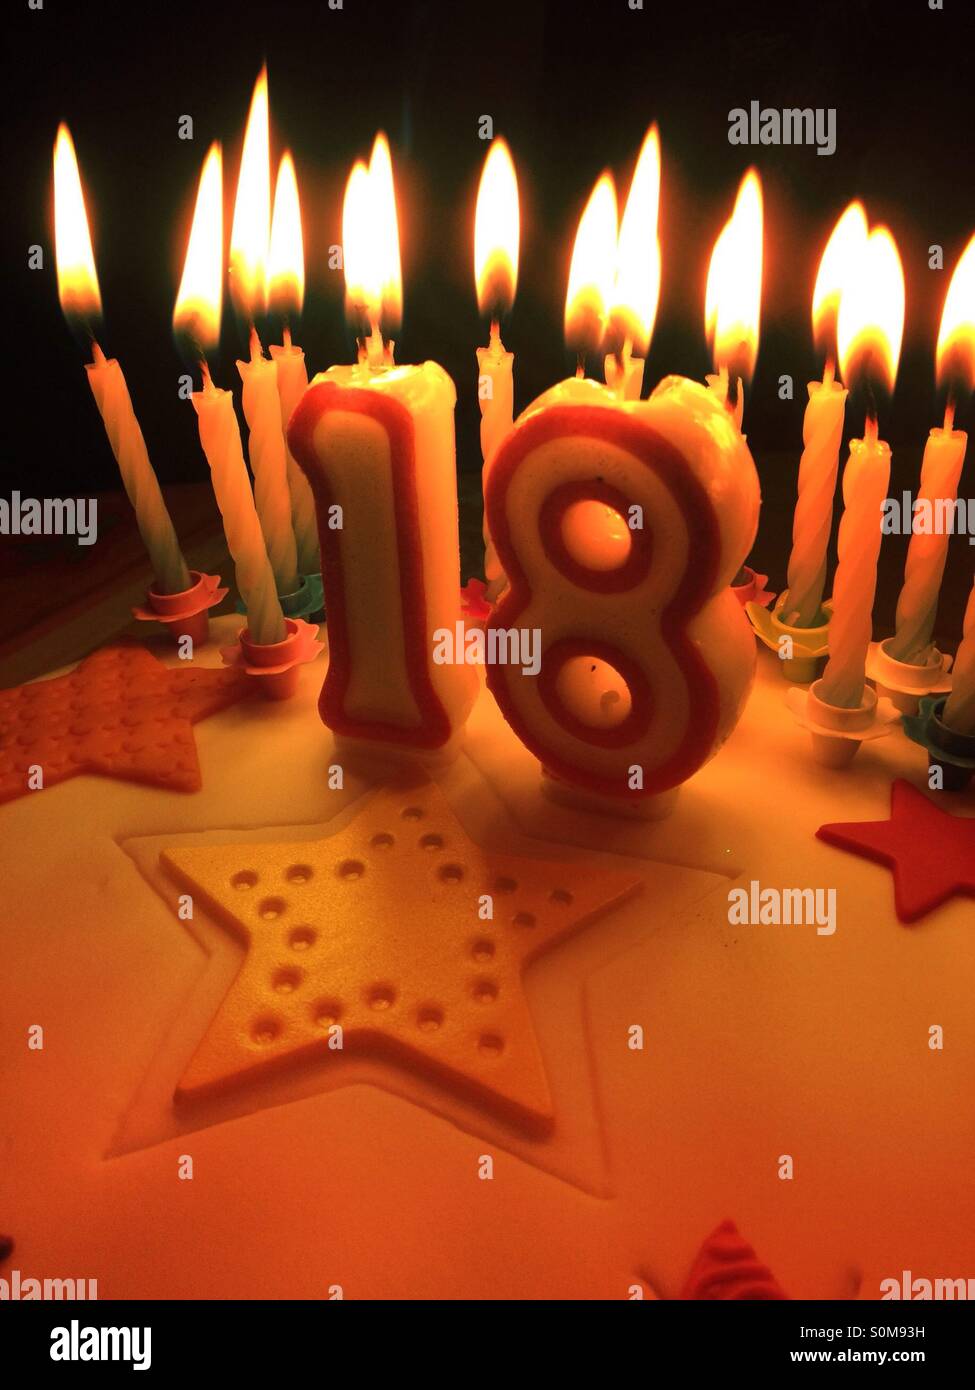 18 eighteen candle birthday cake fotografías e imágenes de alta resolución  - Alamy